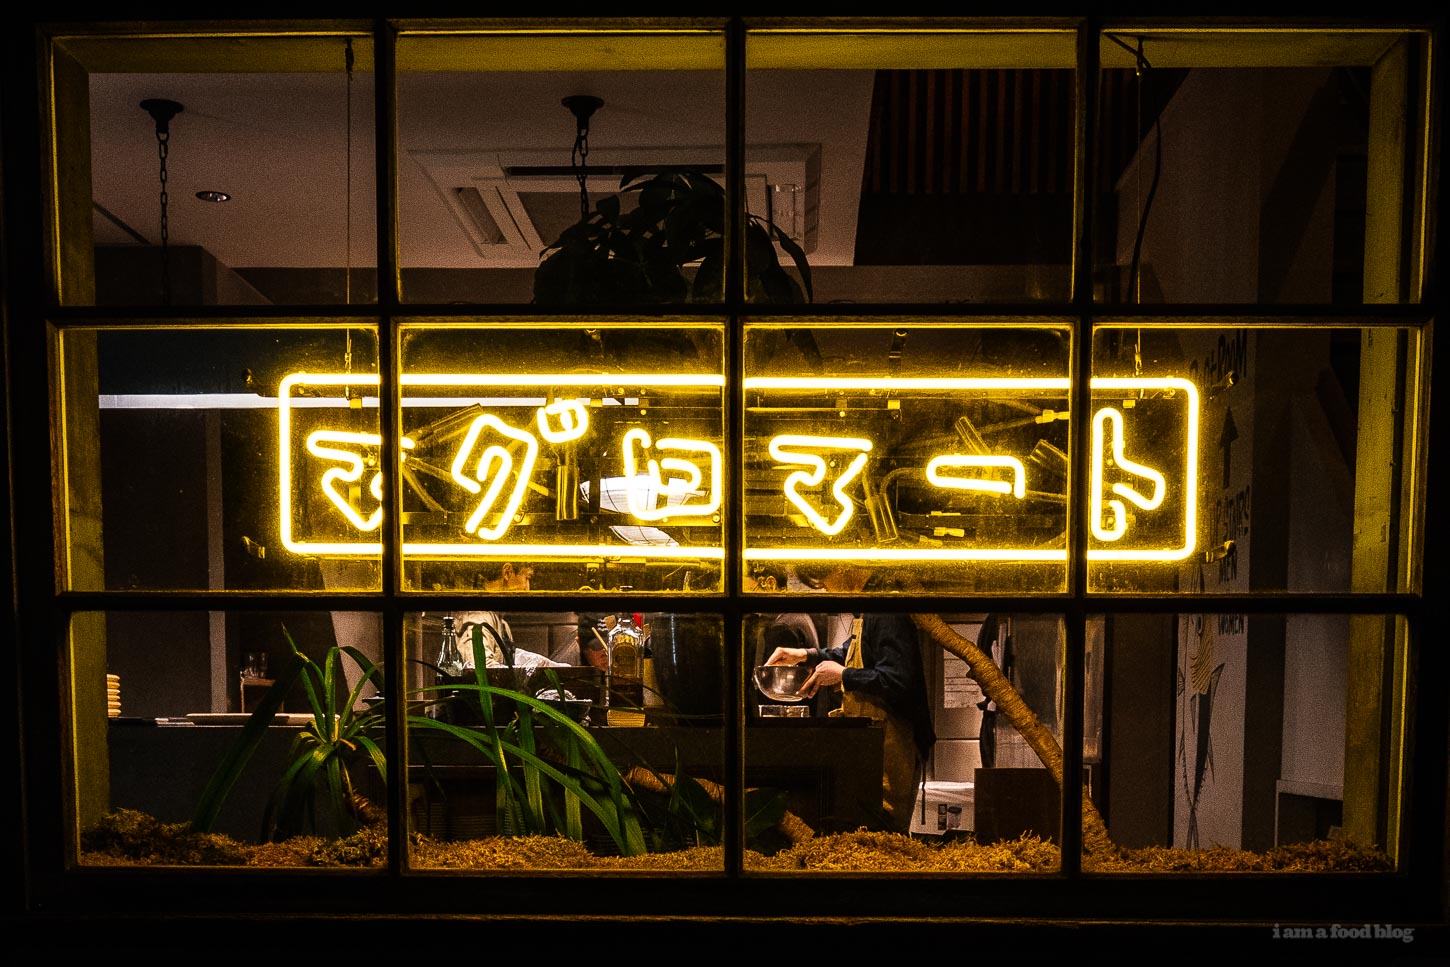 dónde comer atún en tokio #viajes #atún #tokio #comida japonesa